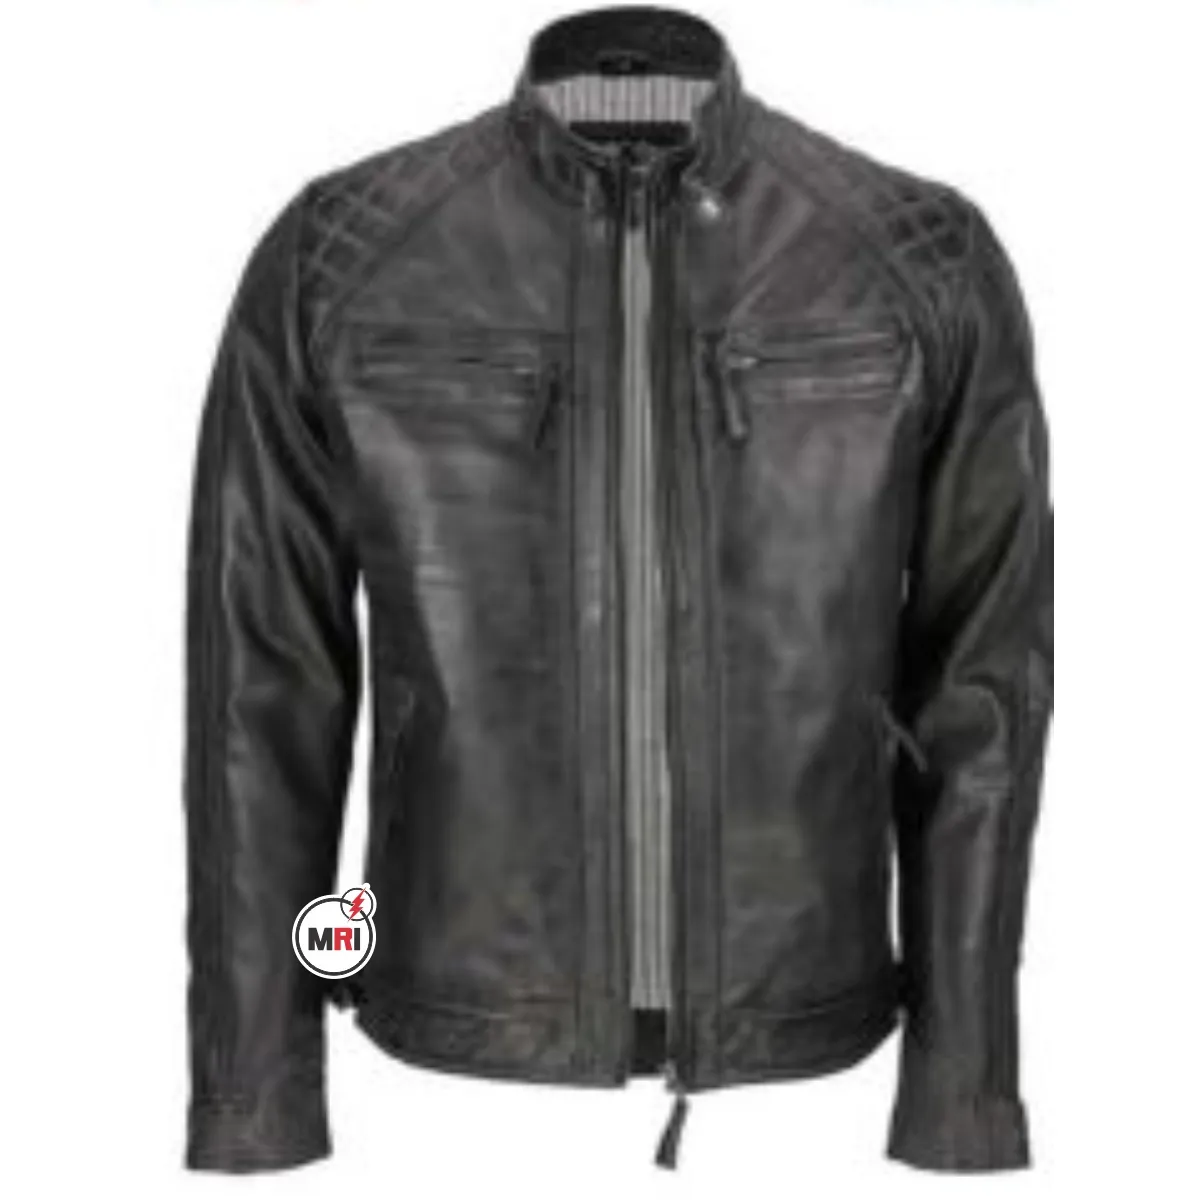 Mens Couro Motocicleta Jaqueta Plain Sides design personalizado jaqueta de couro motociclista de alta qualidade Brand New Atacado PU Leather Jacket